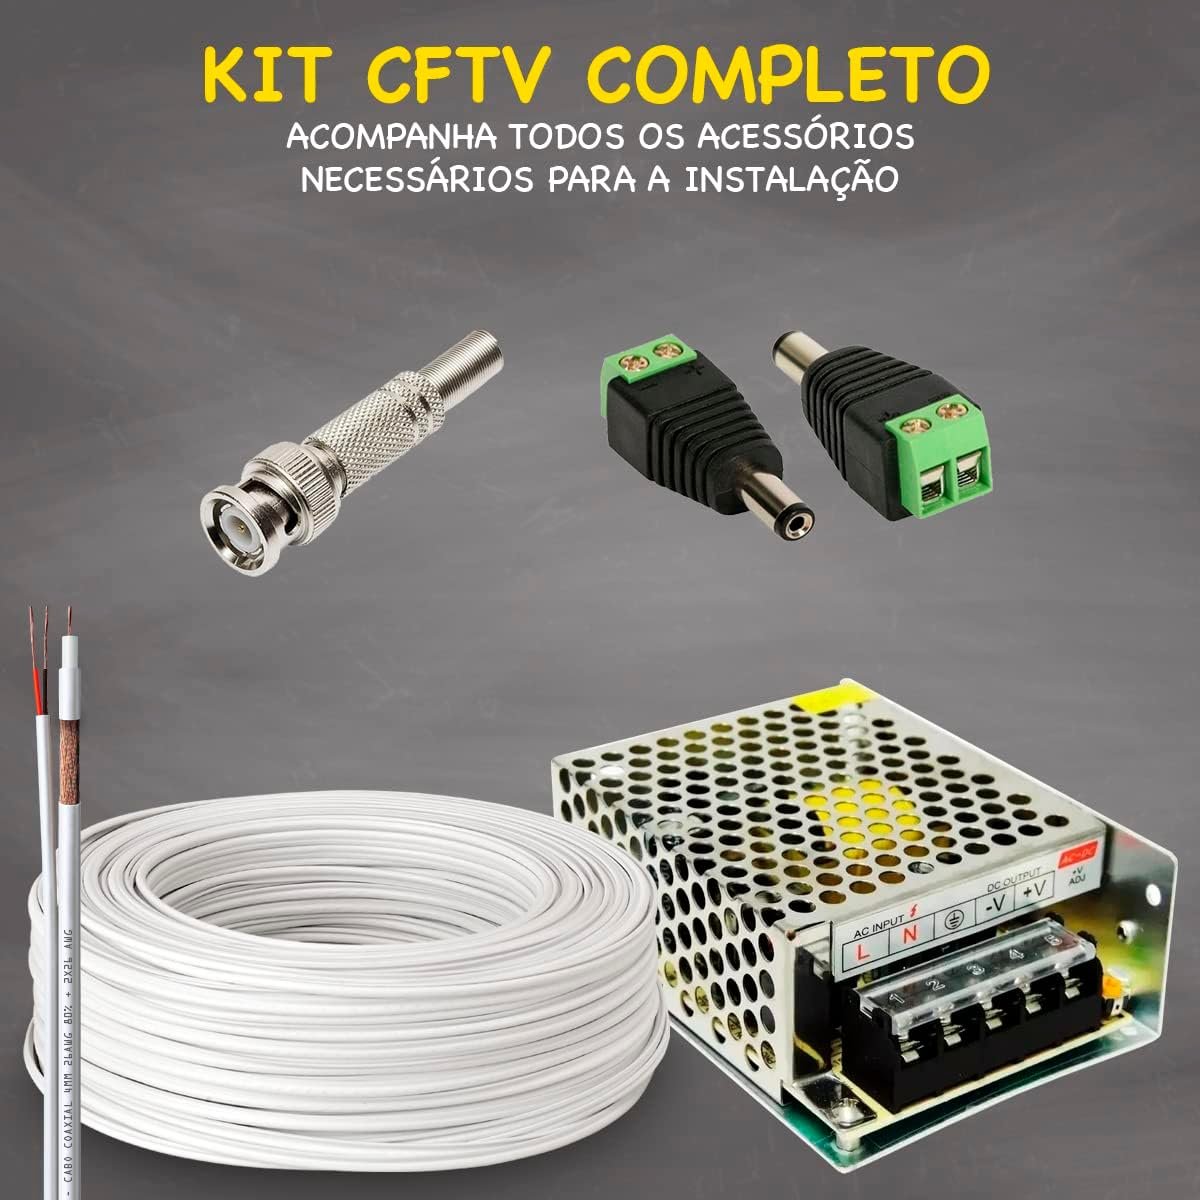 Kit Cftv 4 Cameras Segurança 1080p Full Hd Dvr Intelbras 4ch - 4